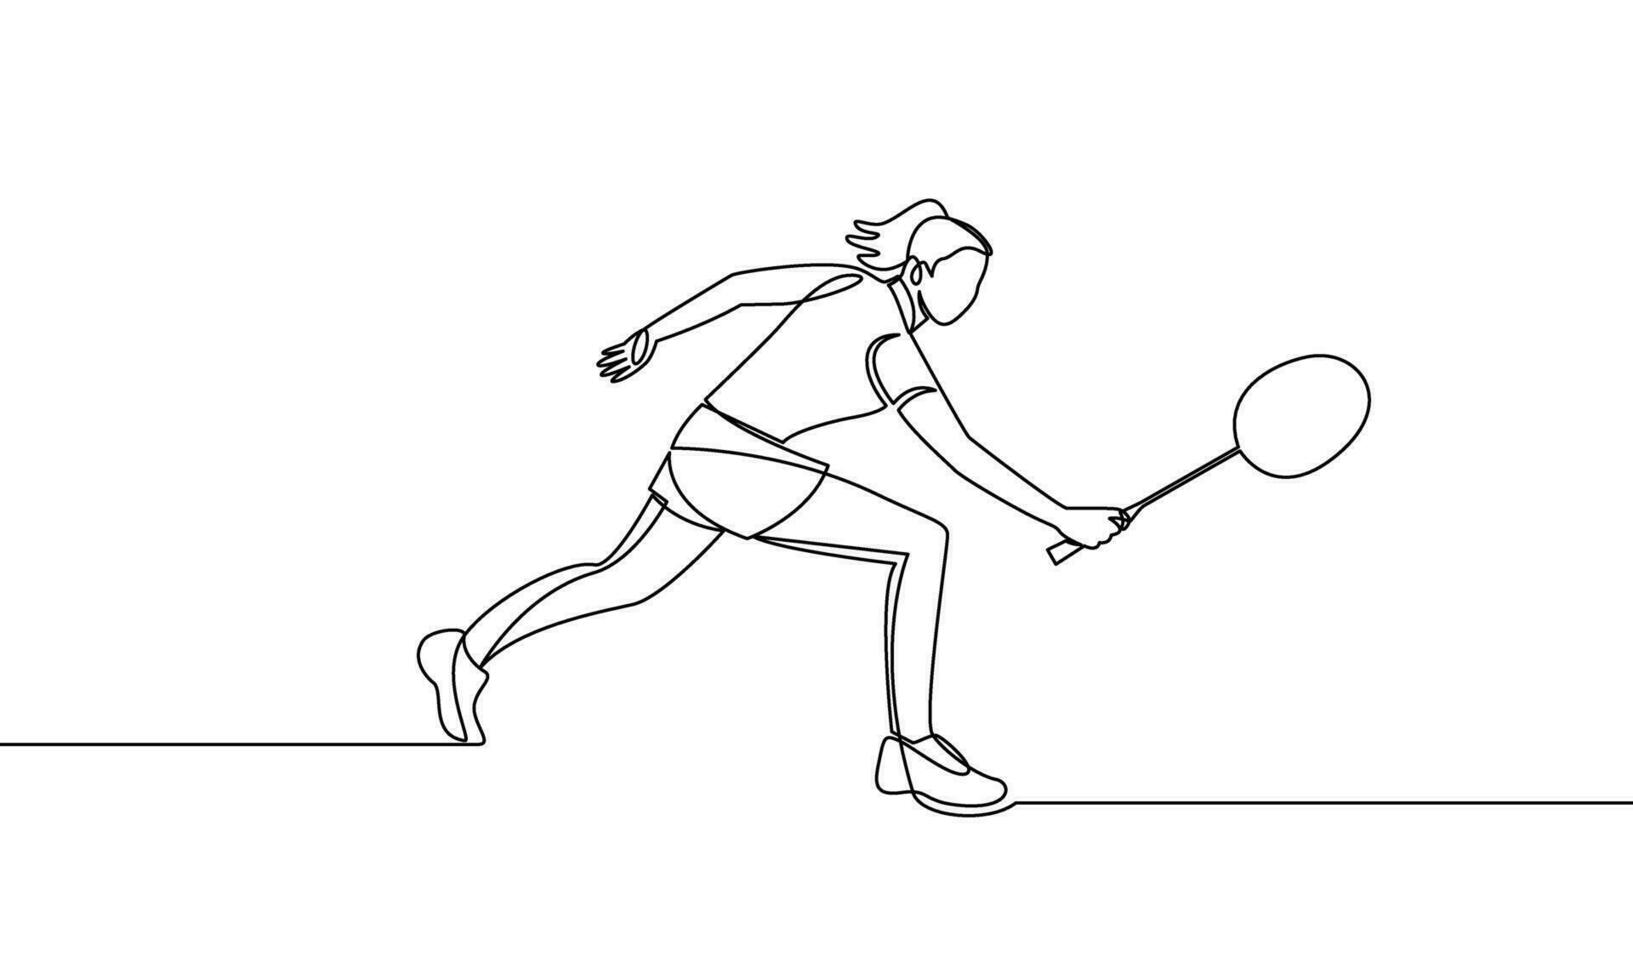 soltero continuo línea dibujo de un joven mujer jugando bádminton. Deportes, juego. el concepto de ataque y defensa. uno línea vector ilustración